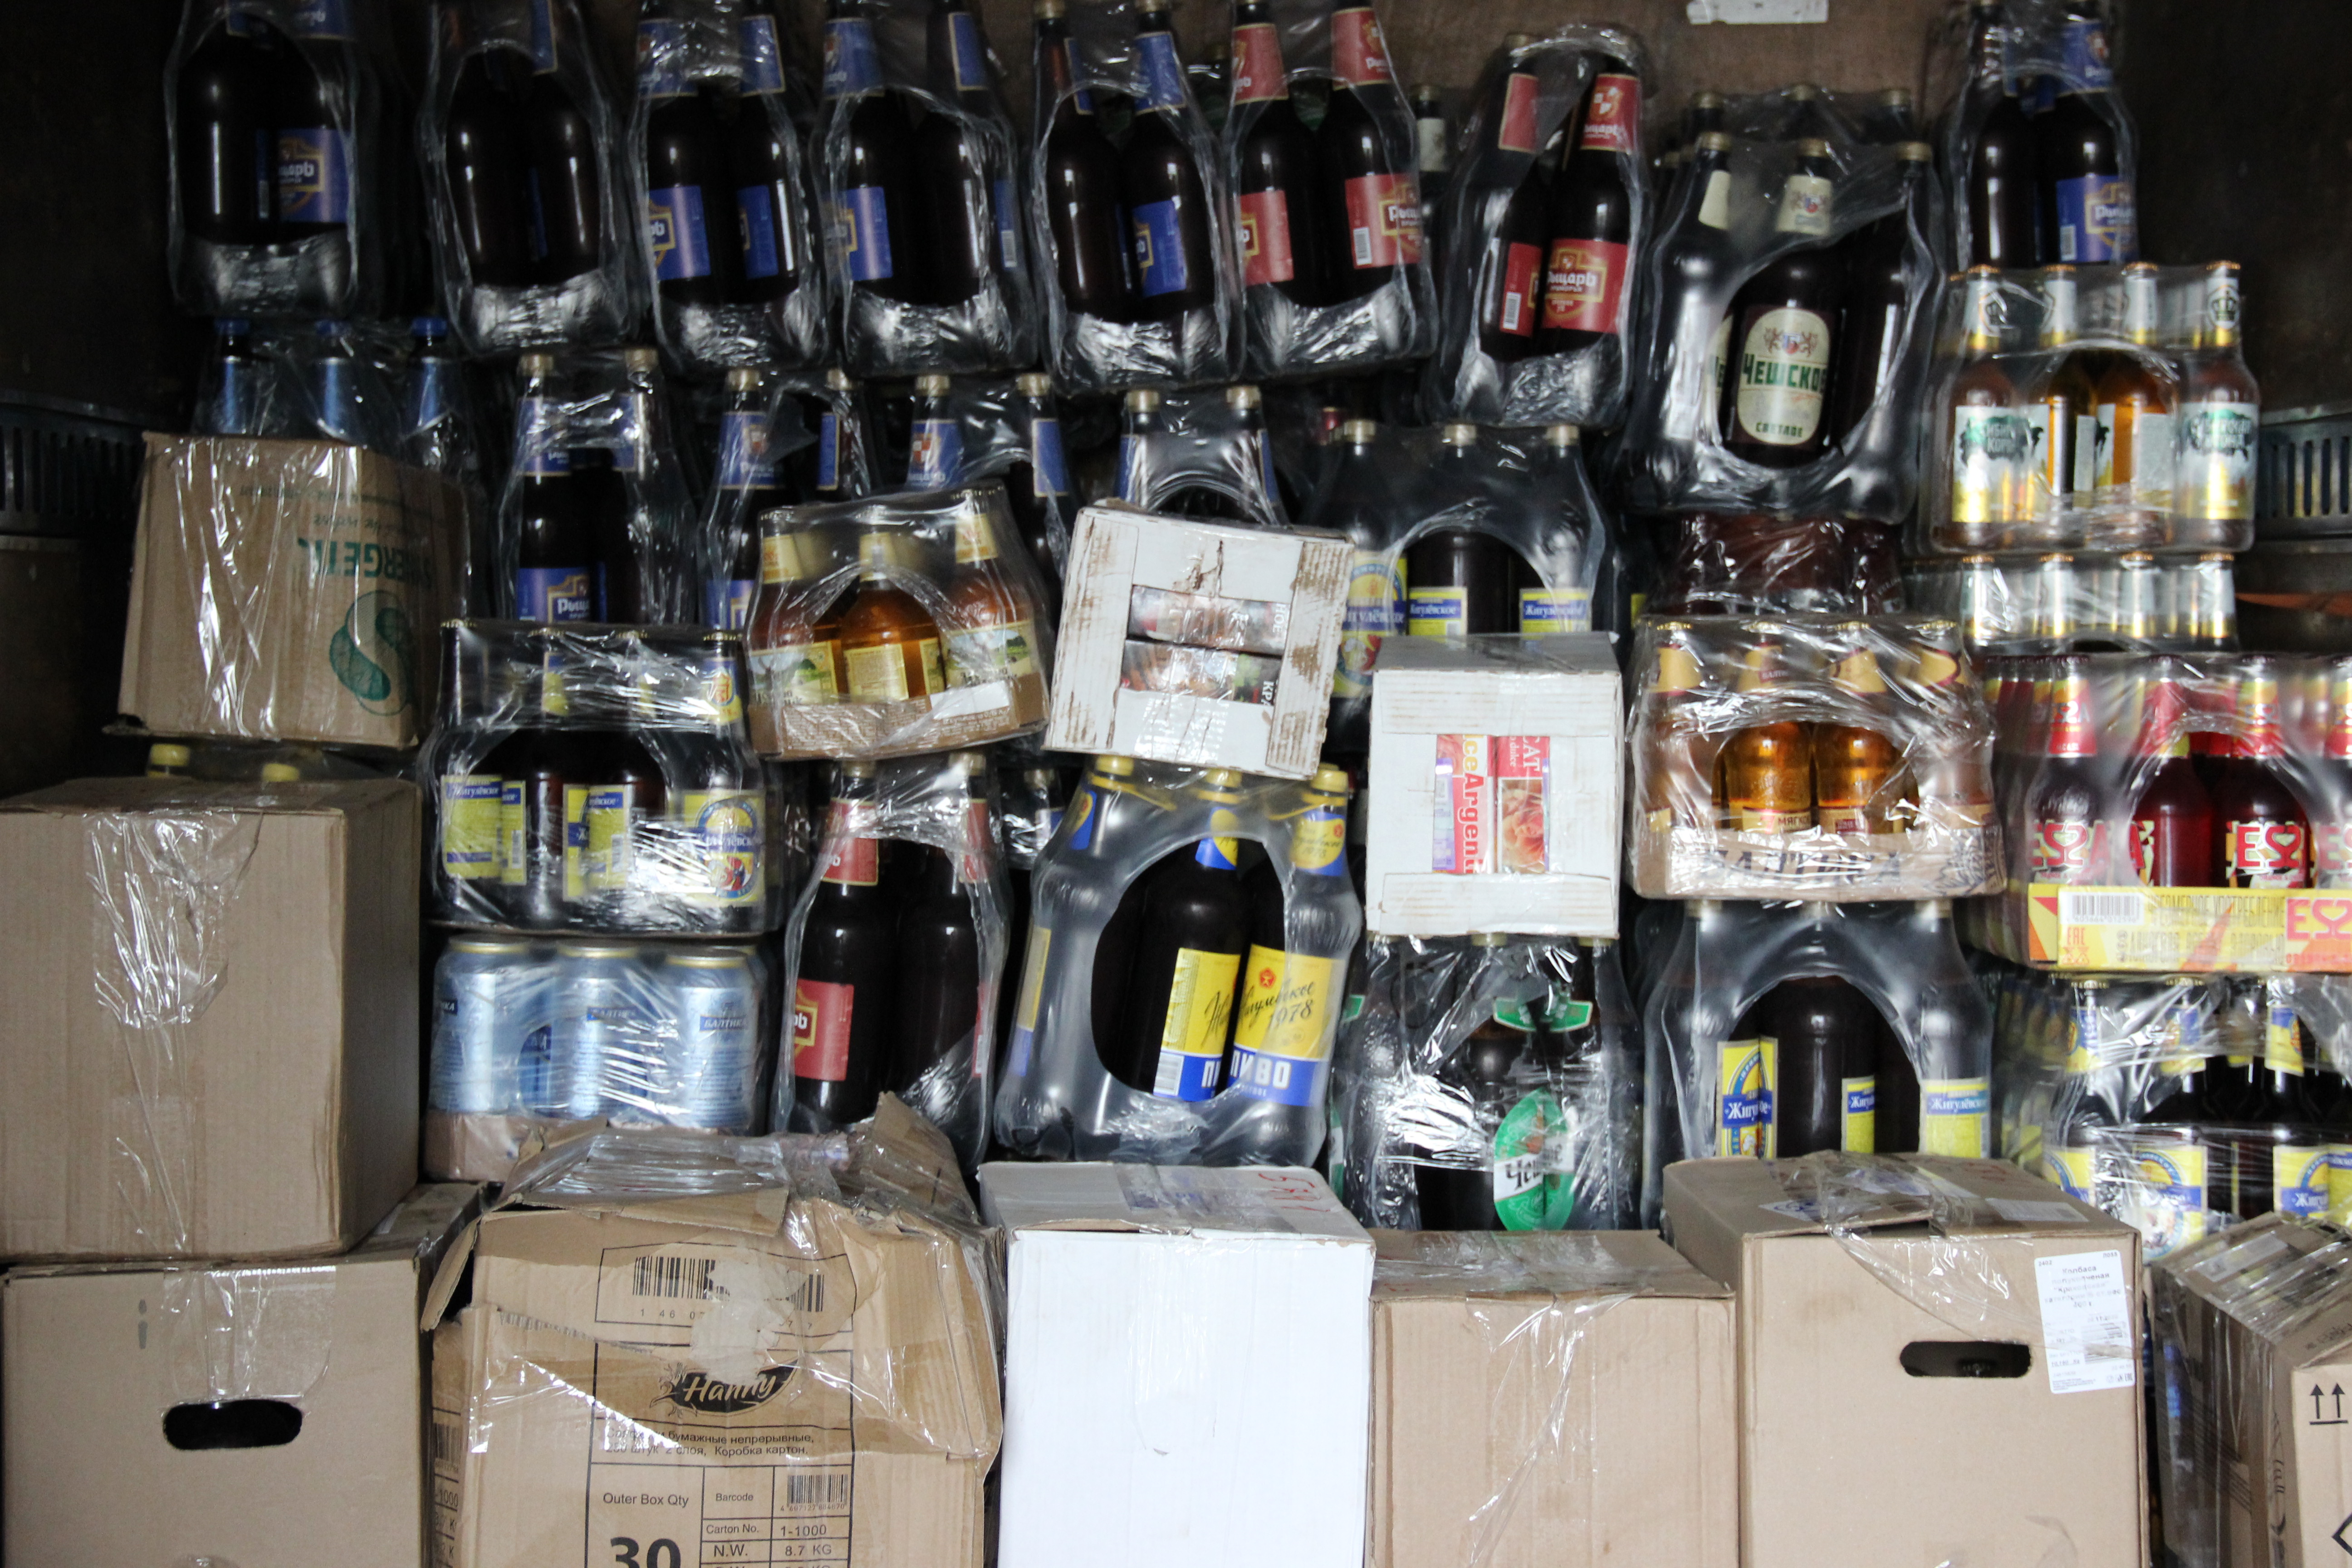 Больше 1,2 тысячи литров нелегального алкоголя уничтожат в Амурской области / Крупную партию алкоголя обнаружили и передали на днях специалисты регионального минэкономразвития и внешних связей на уничтожение в Росспиртпром. Всего с начала года изъяли больше 1 200 литров, или 1 352 бутылки. В перечне конфиската — пиво в широком ассортименте, водка, коньяк, вино, а также контрафакт.